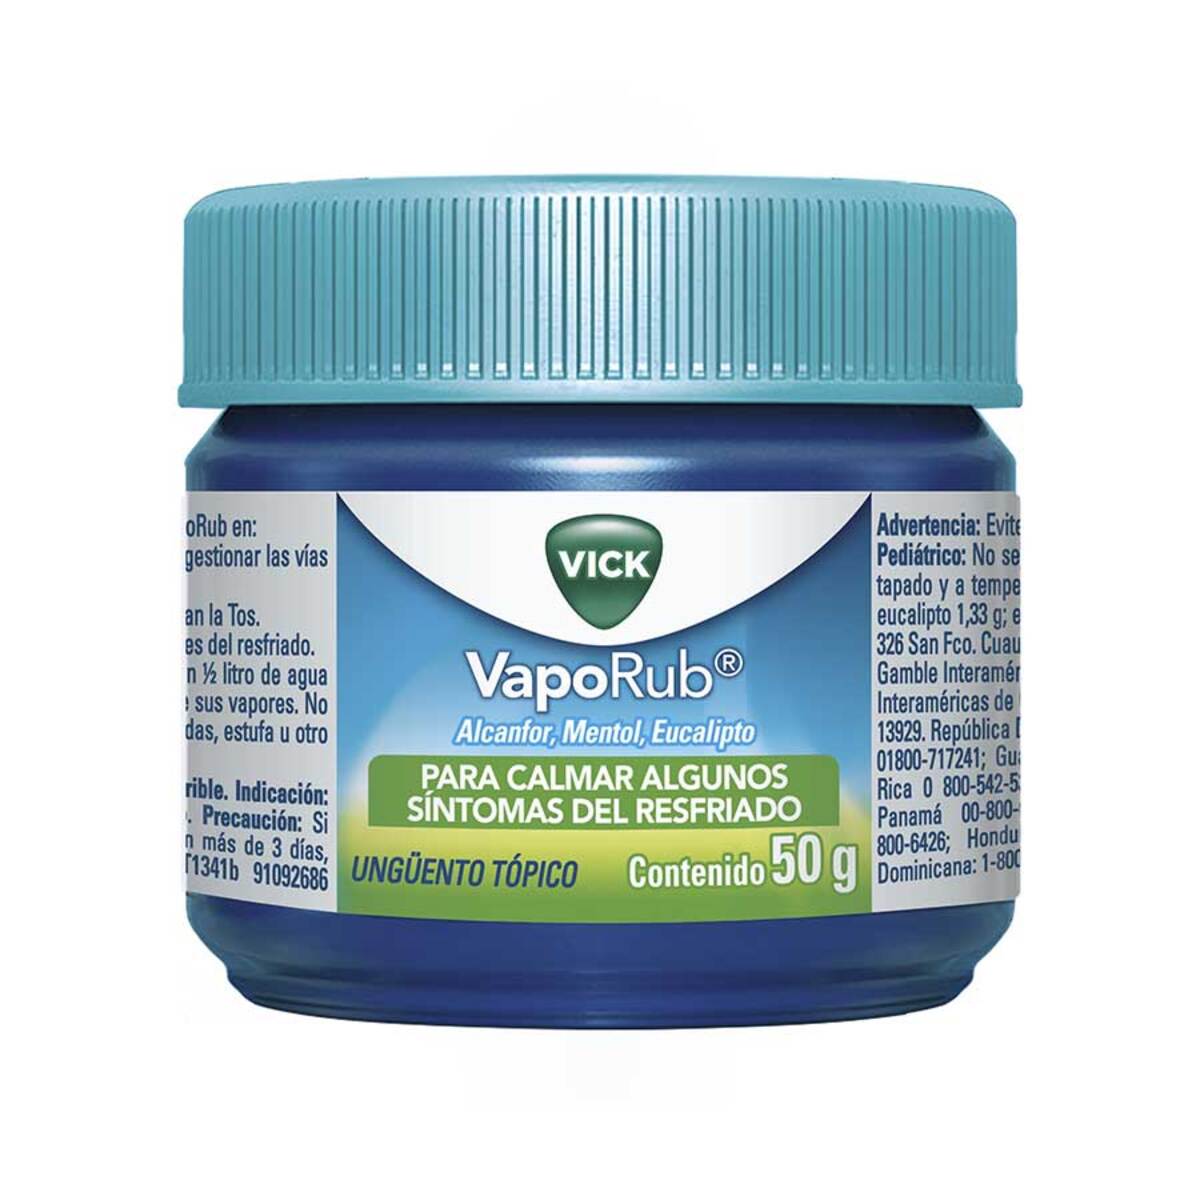 Vicks VapoRub heno inhalación POT 50G a la venta en nuestra farmacia bio